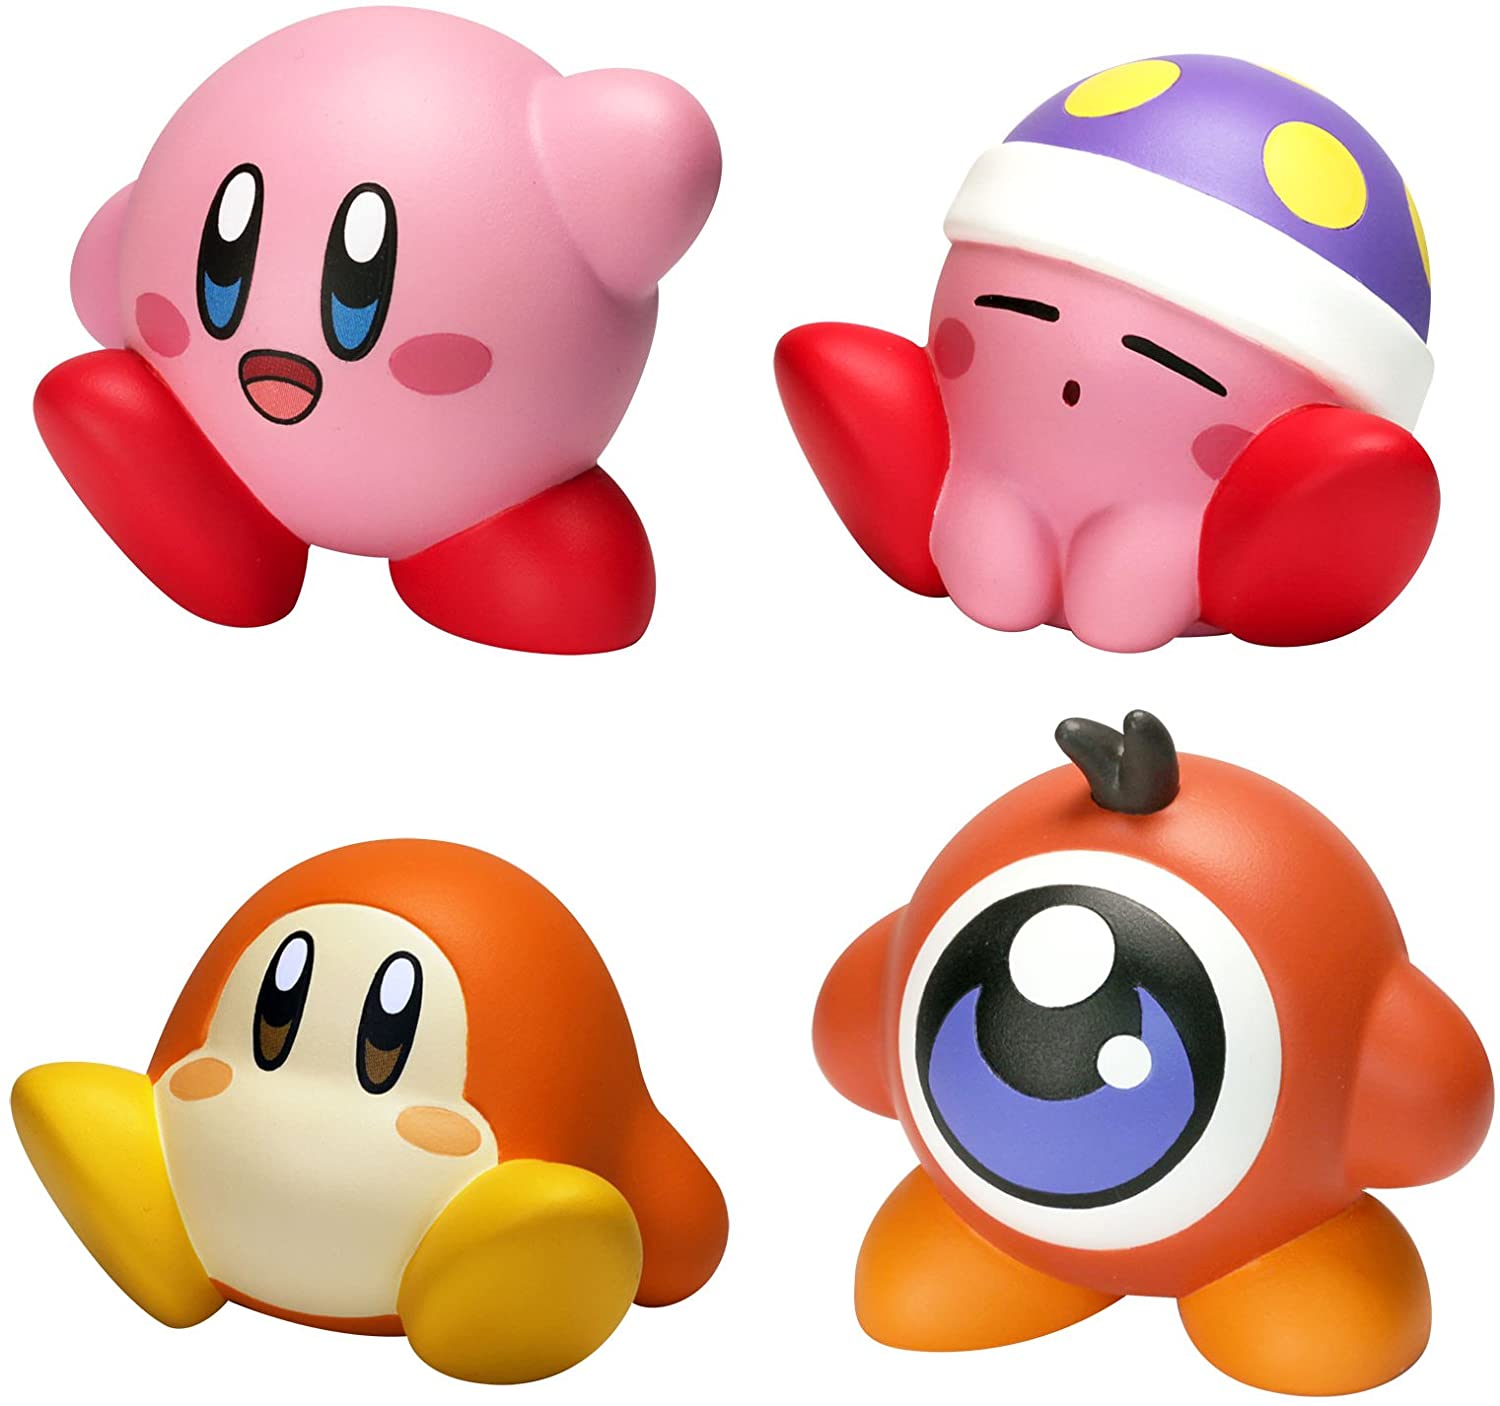 Hoshi no Kirby - Kirby - Hoshi no Kirby x Yummy Mart - Underwear